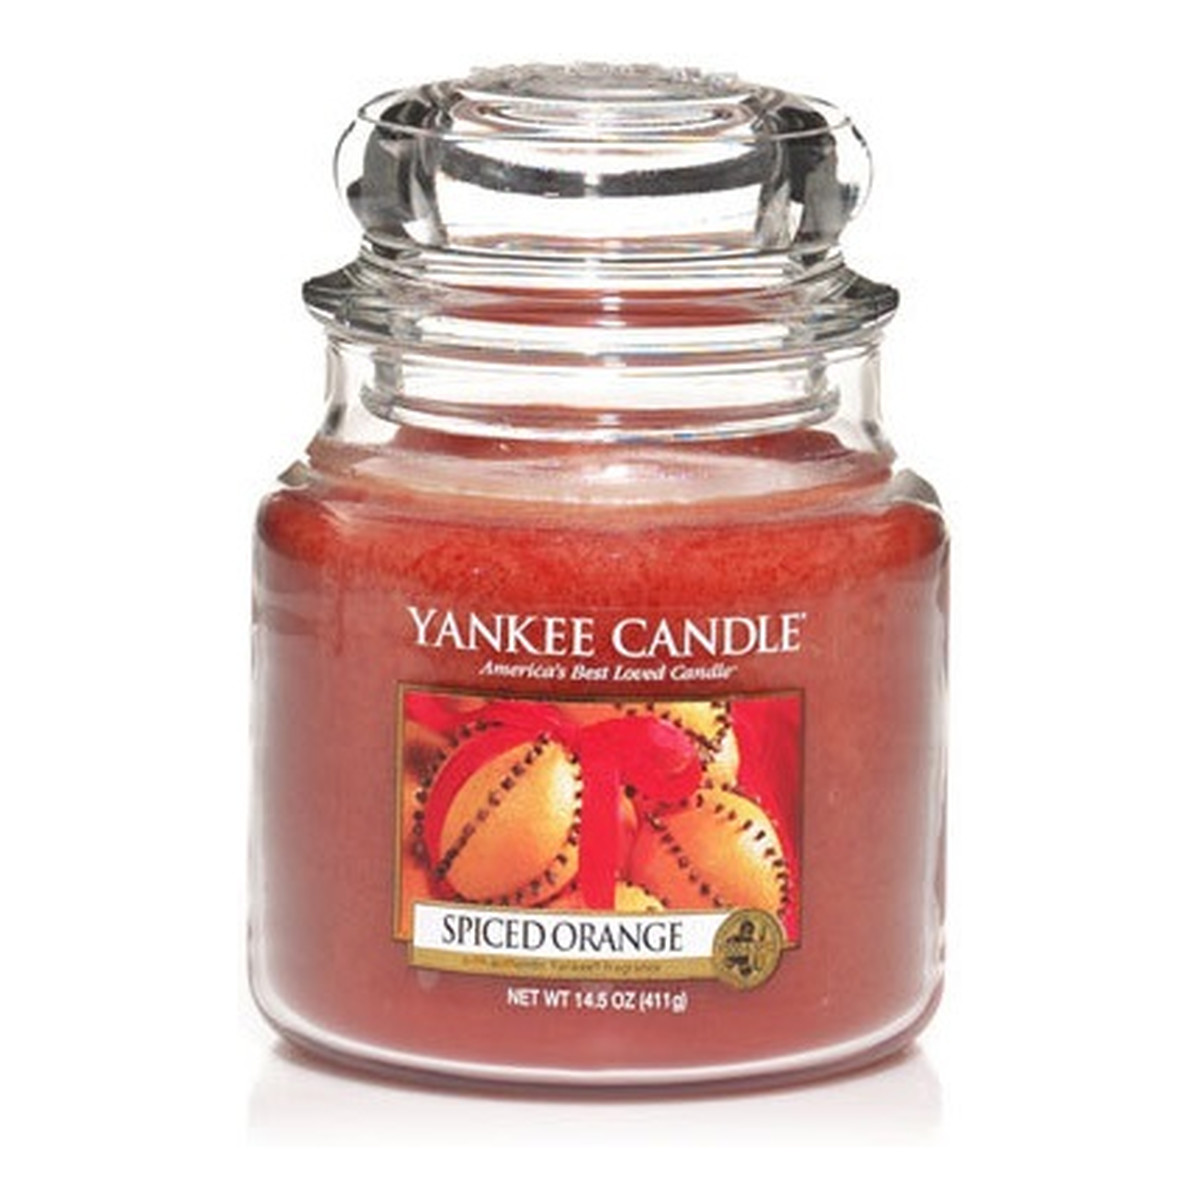 Yankee Candle Świeca zapachowa mały słój spiced orange 104g